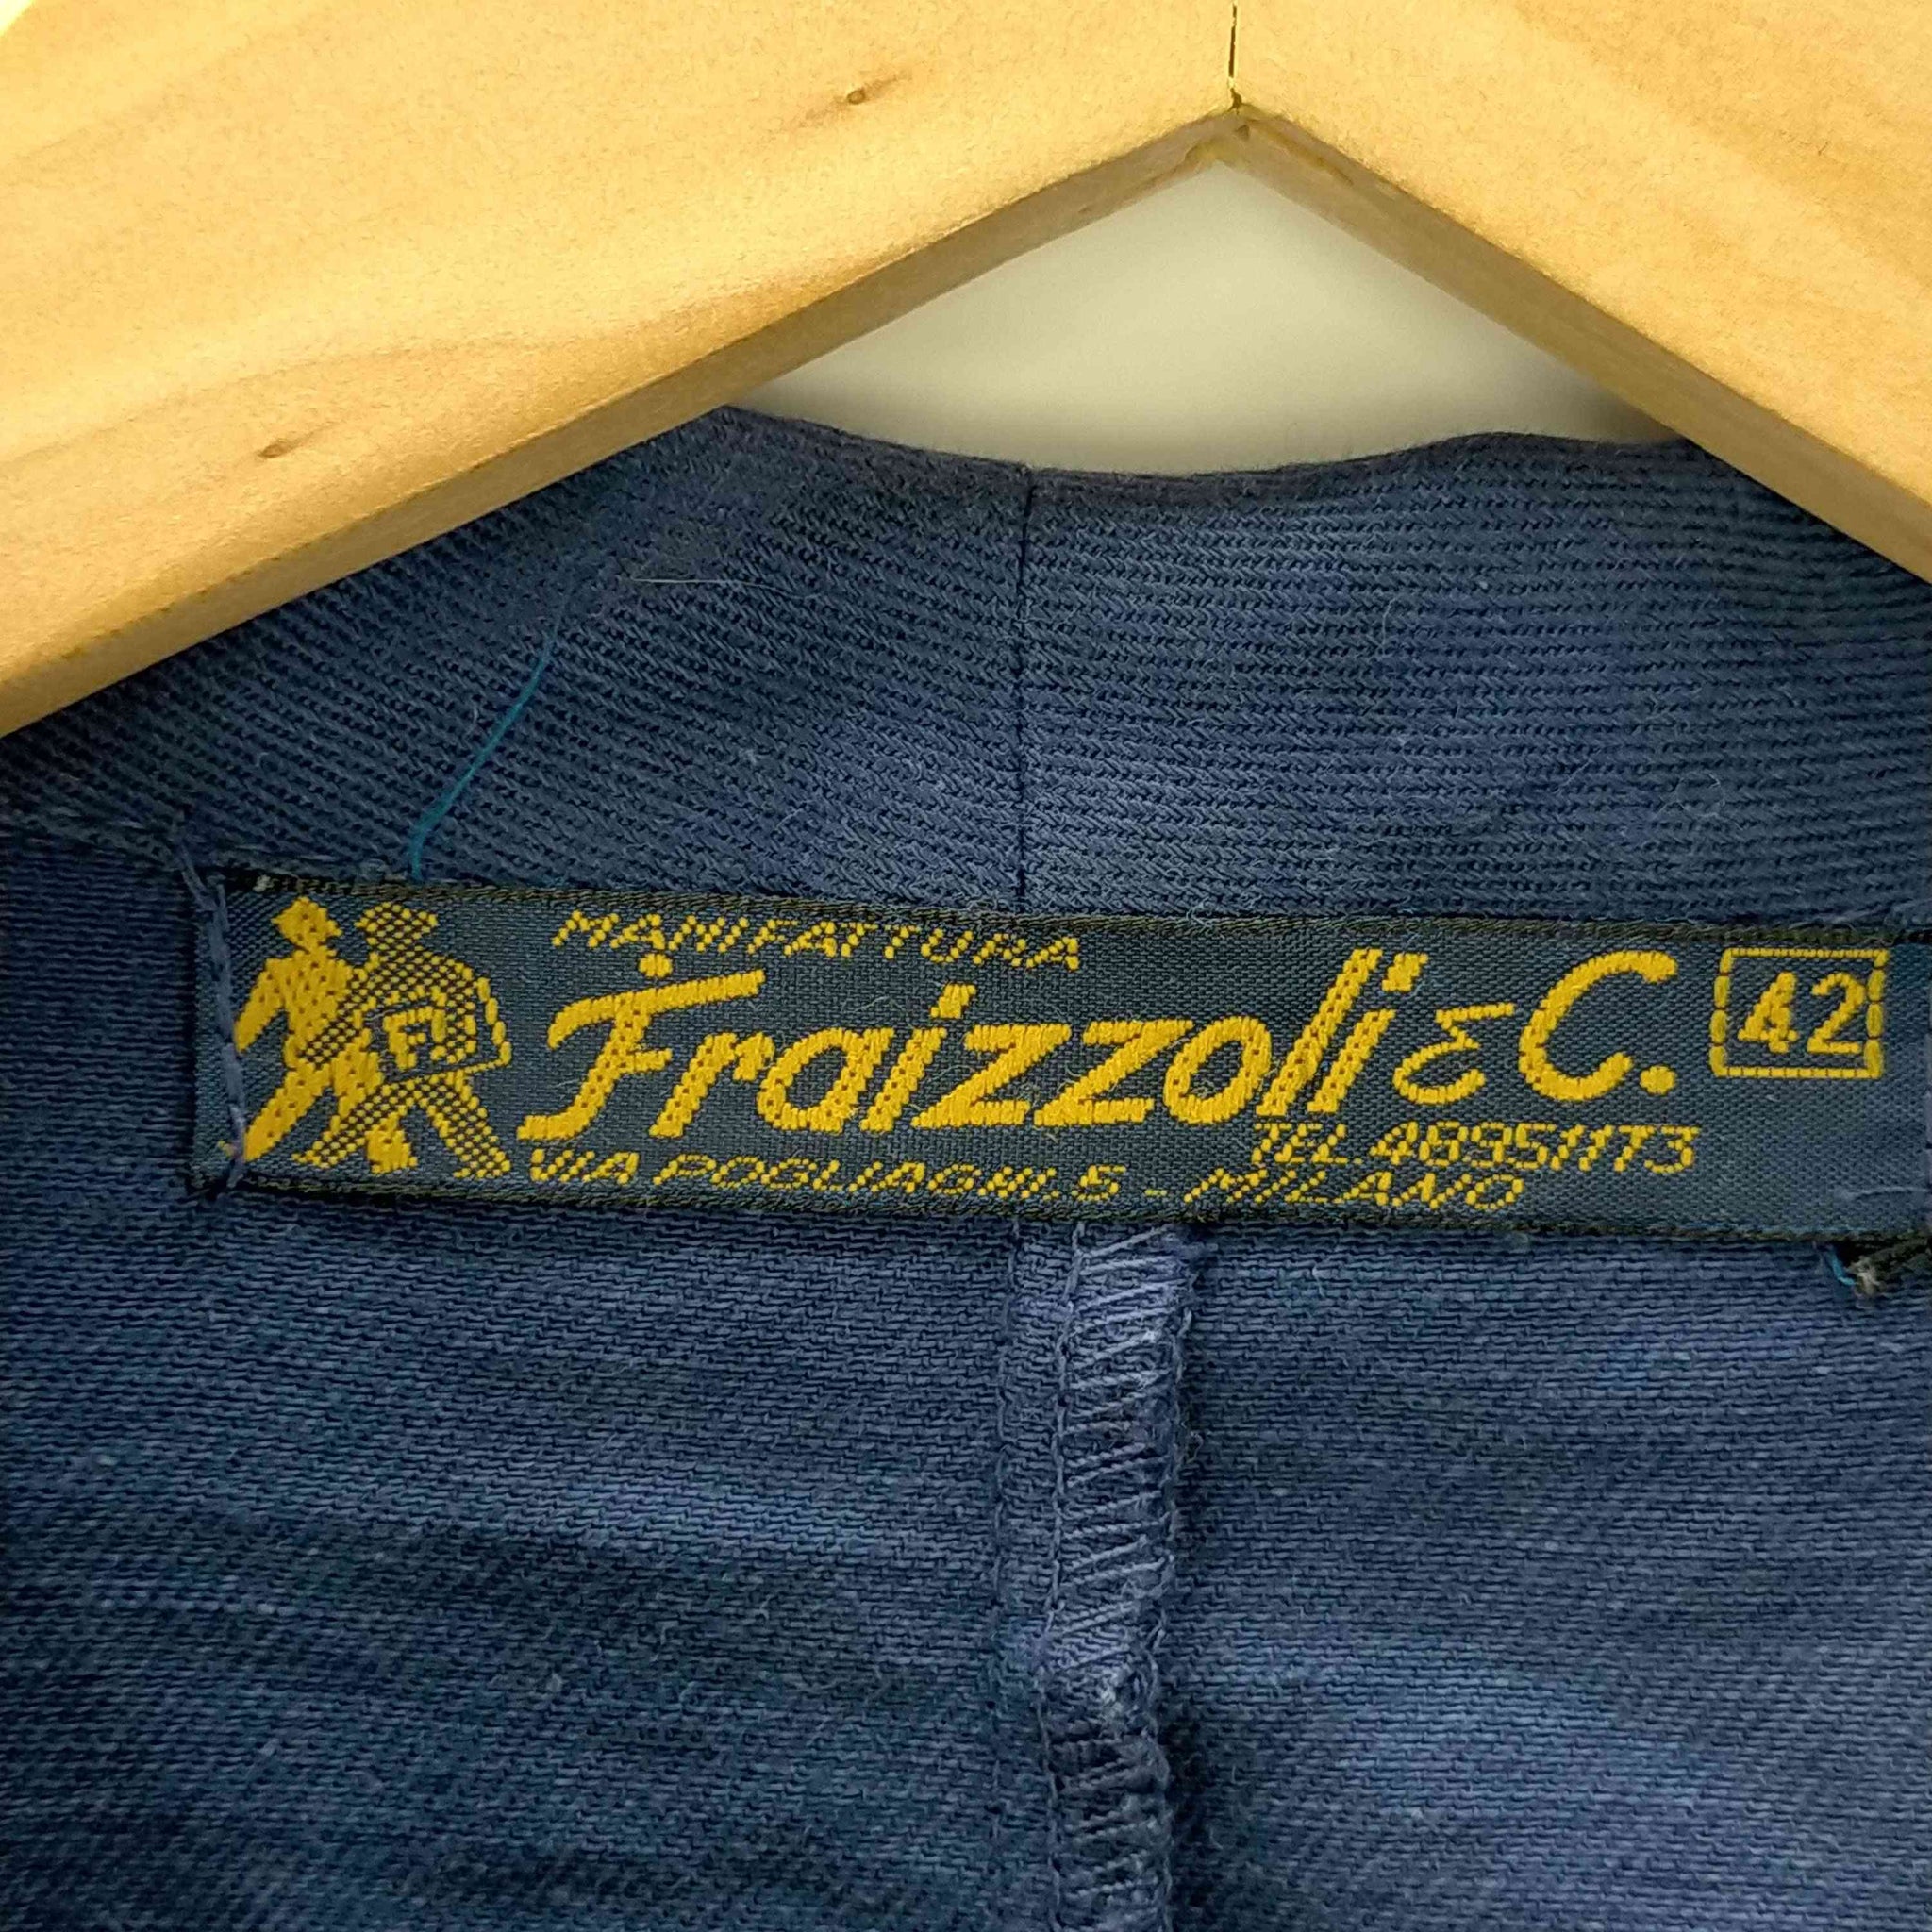 Fraizzoli(フライツォーリ)MADE IN ITALY ユーロ ワークジャケット